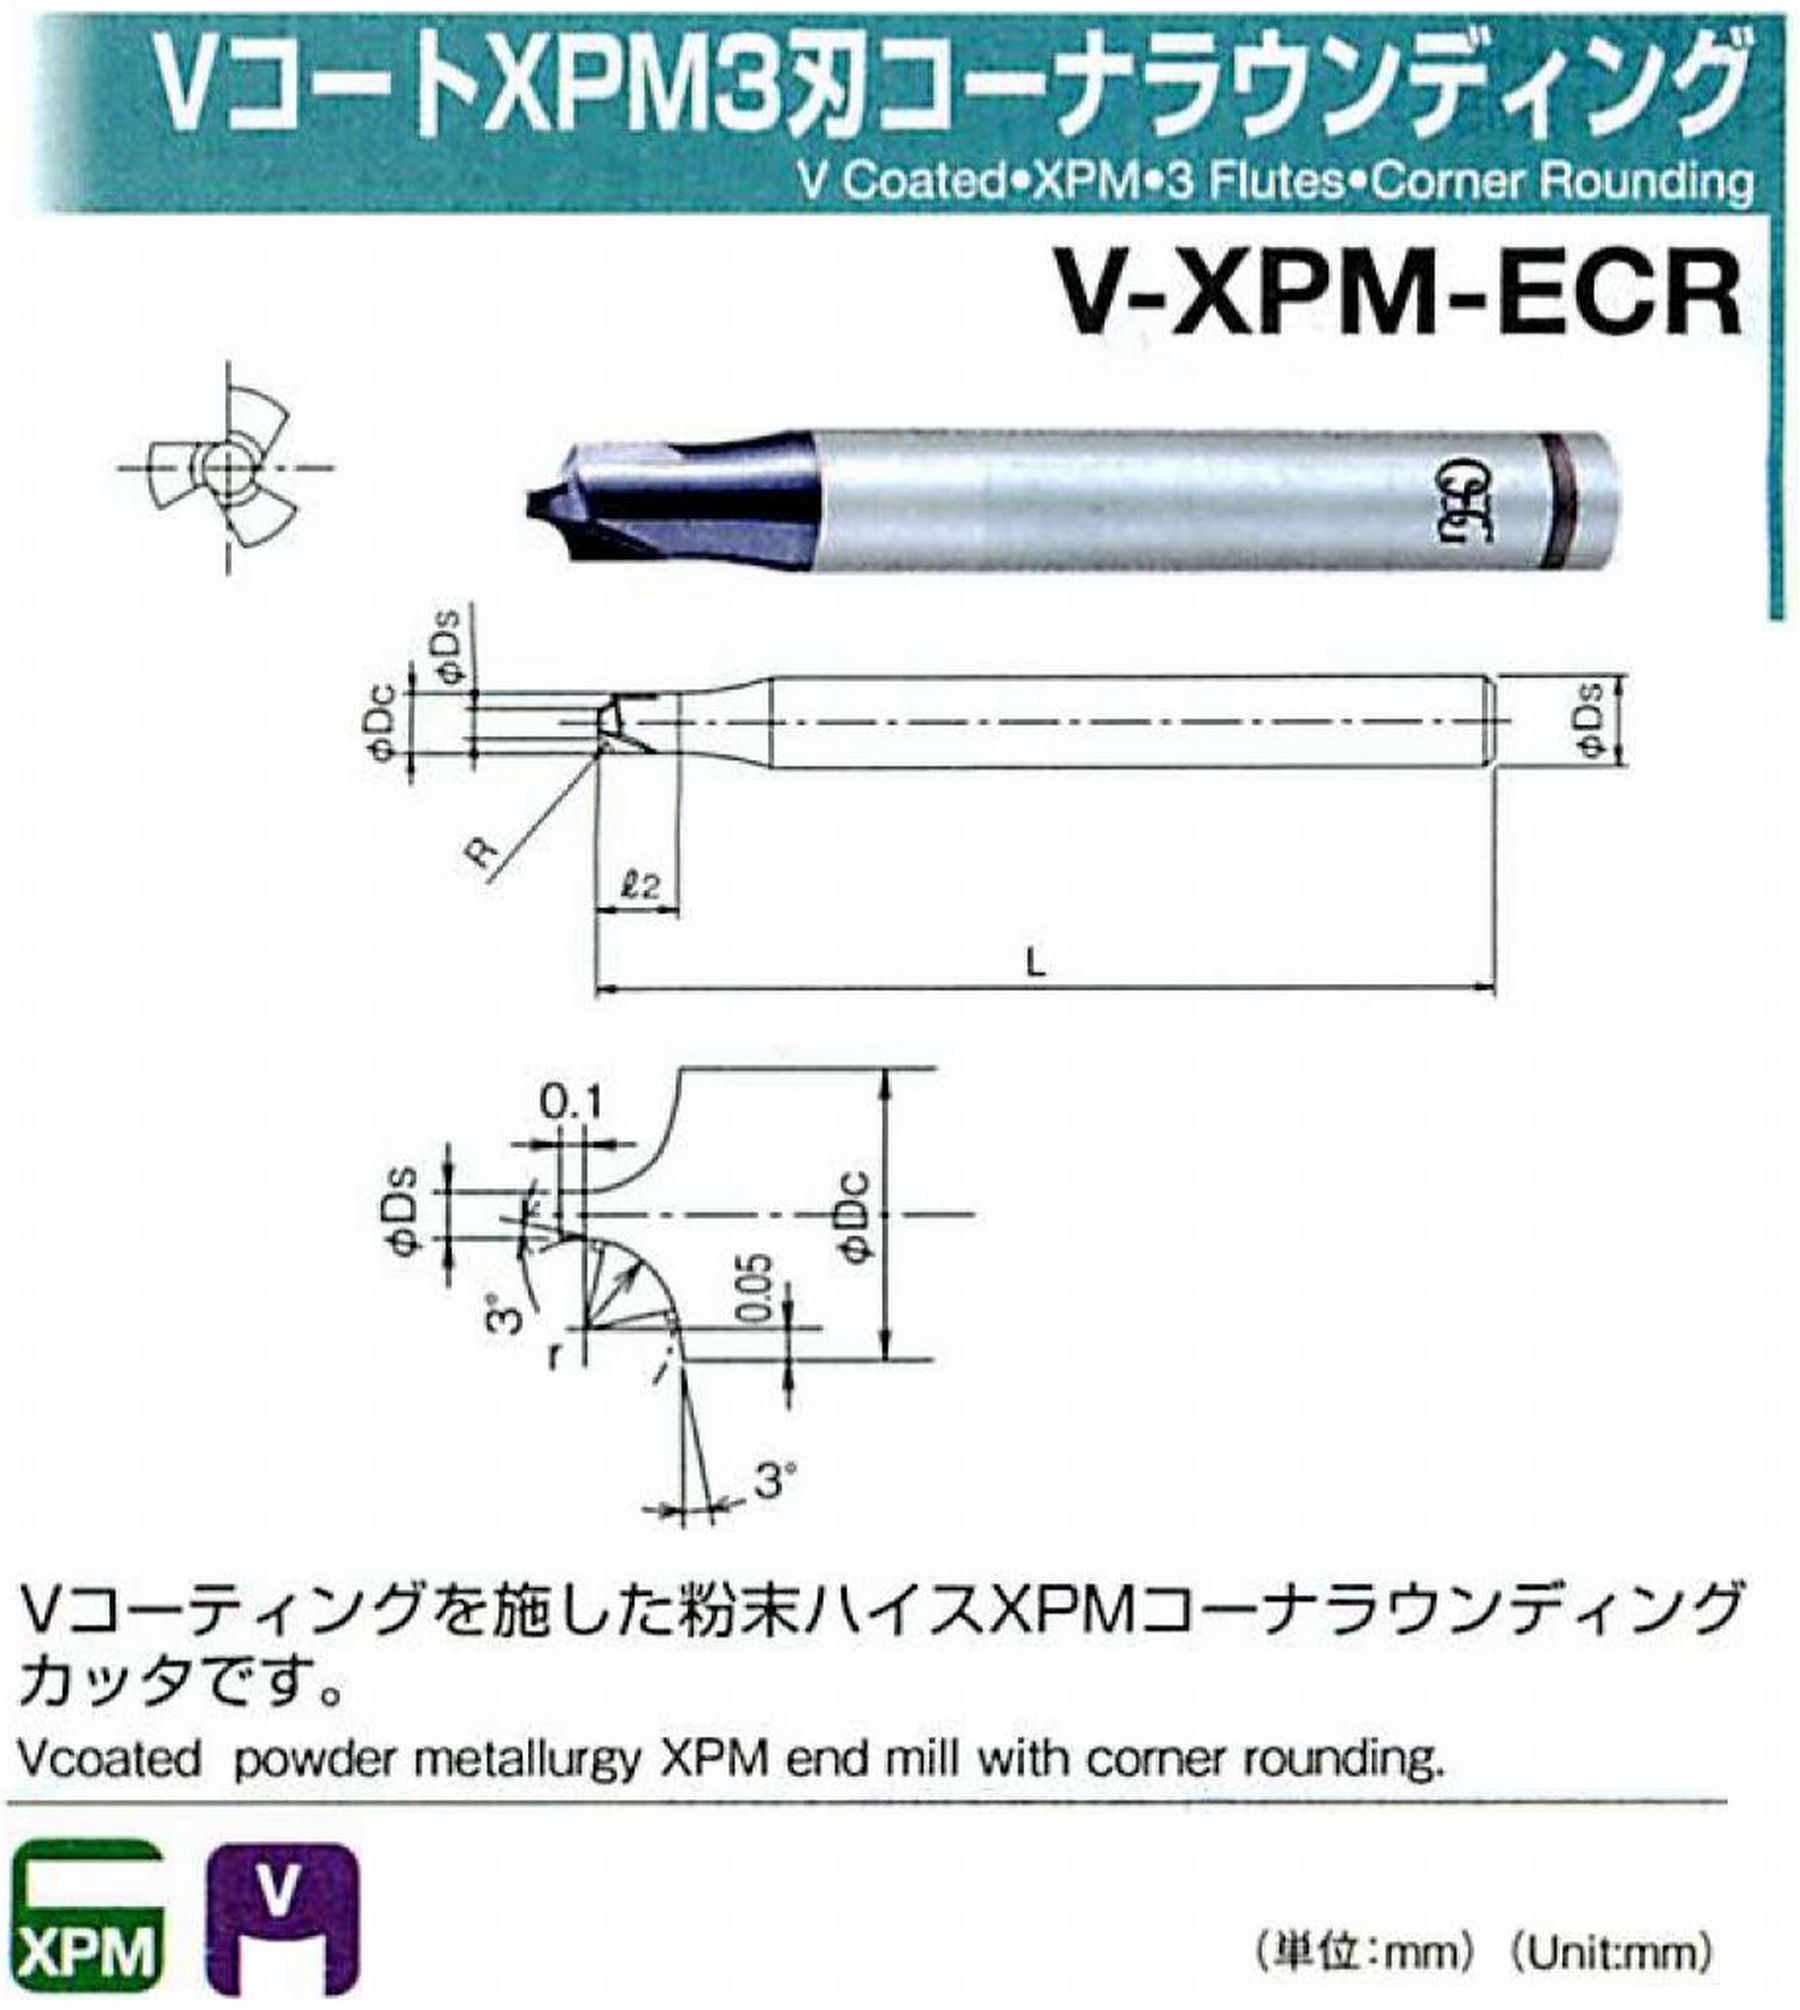 オーエスジー/OSG VコートXPM3刃 コーナラウンディング V-XPM-ECR 先端角×コーナ半径2×R1 外径4 全長60 シャンク径6mm 首下長5.5